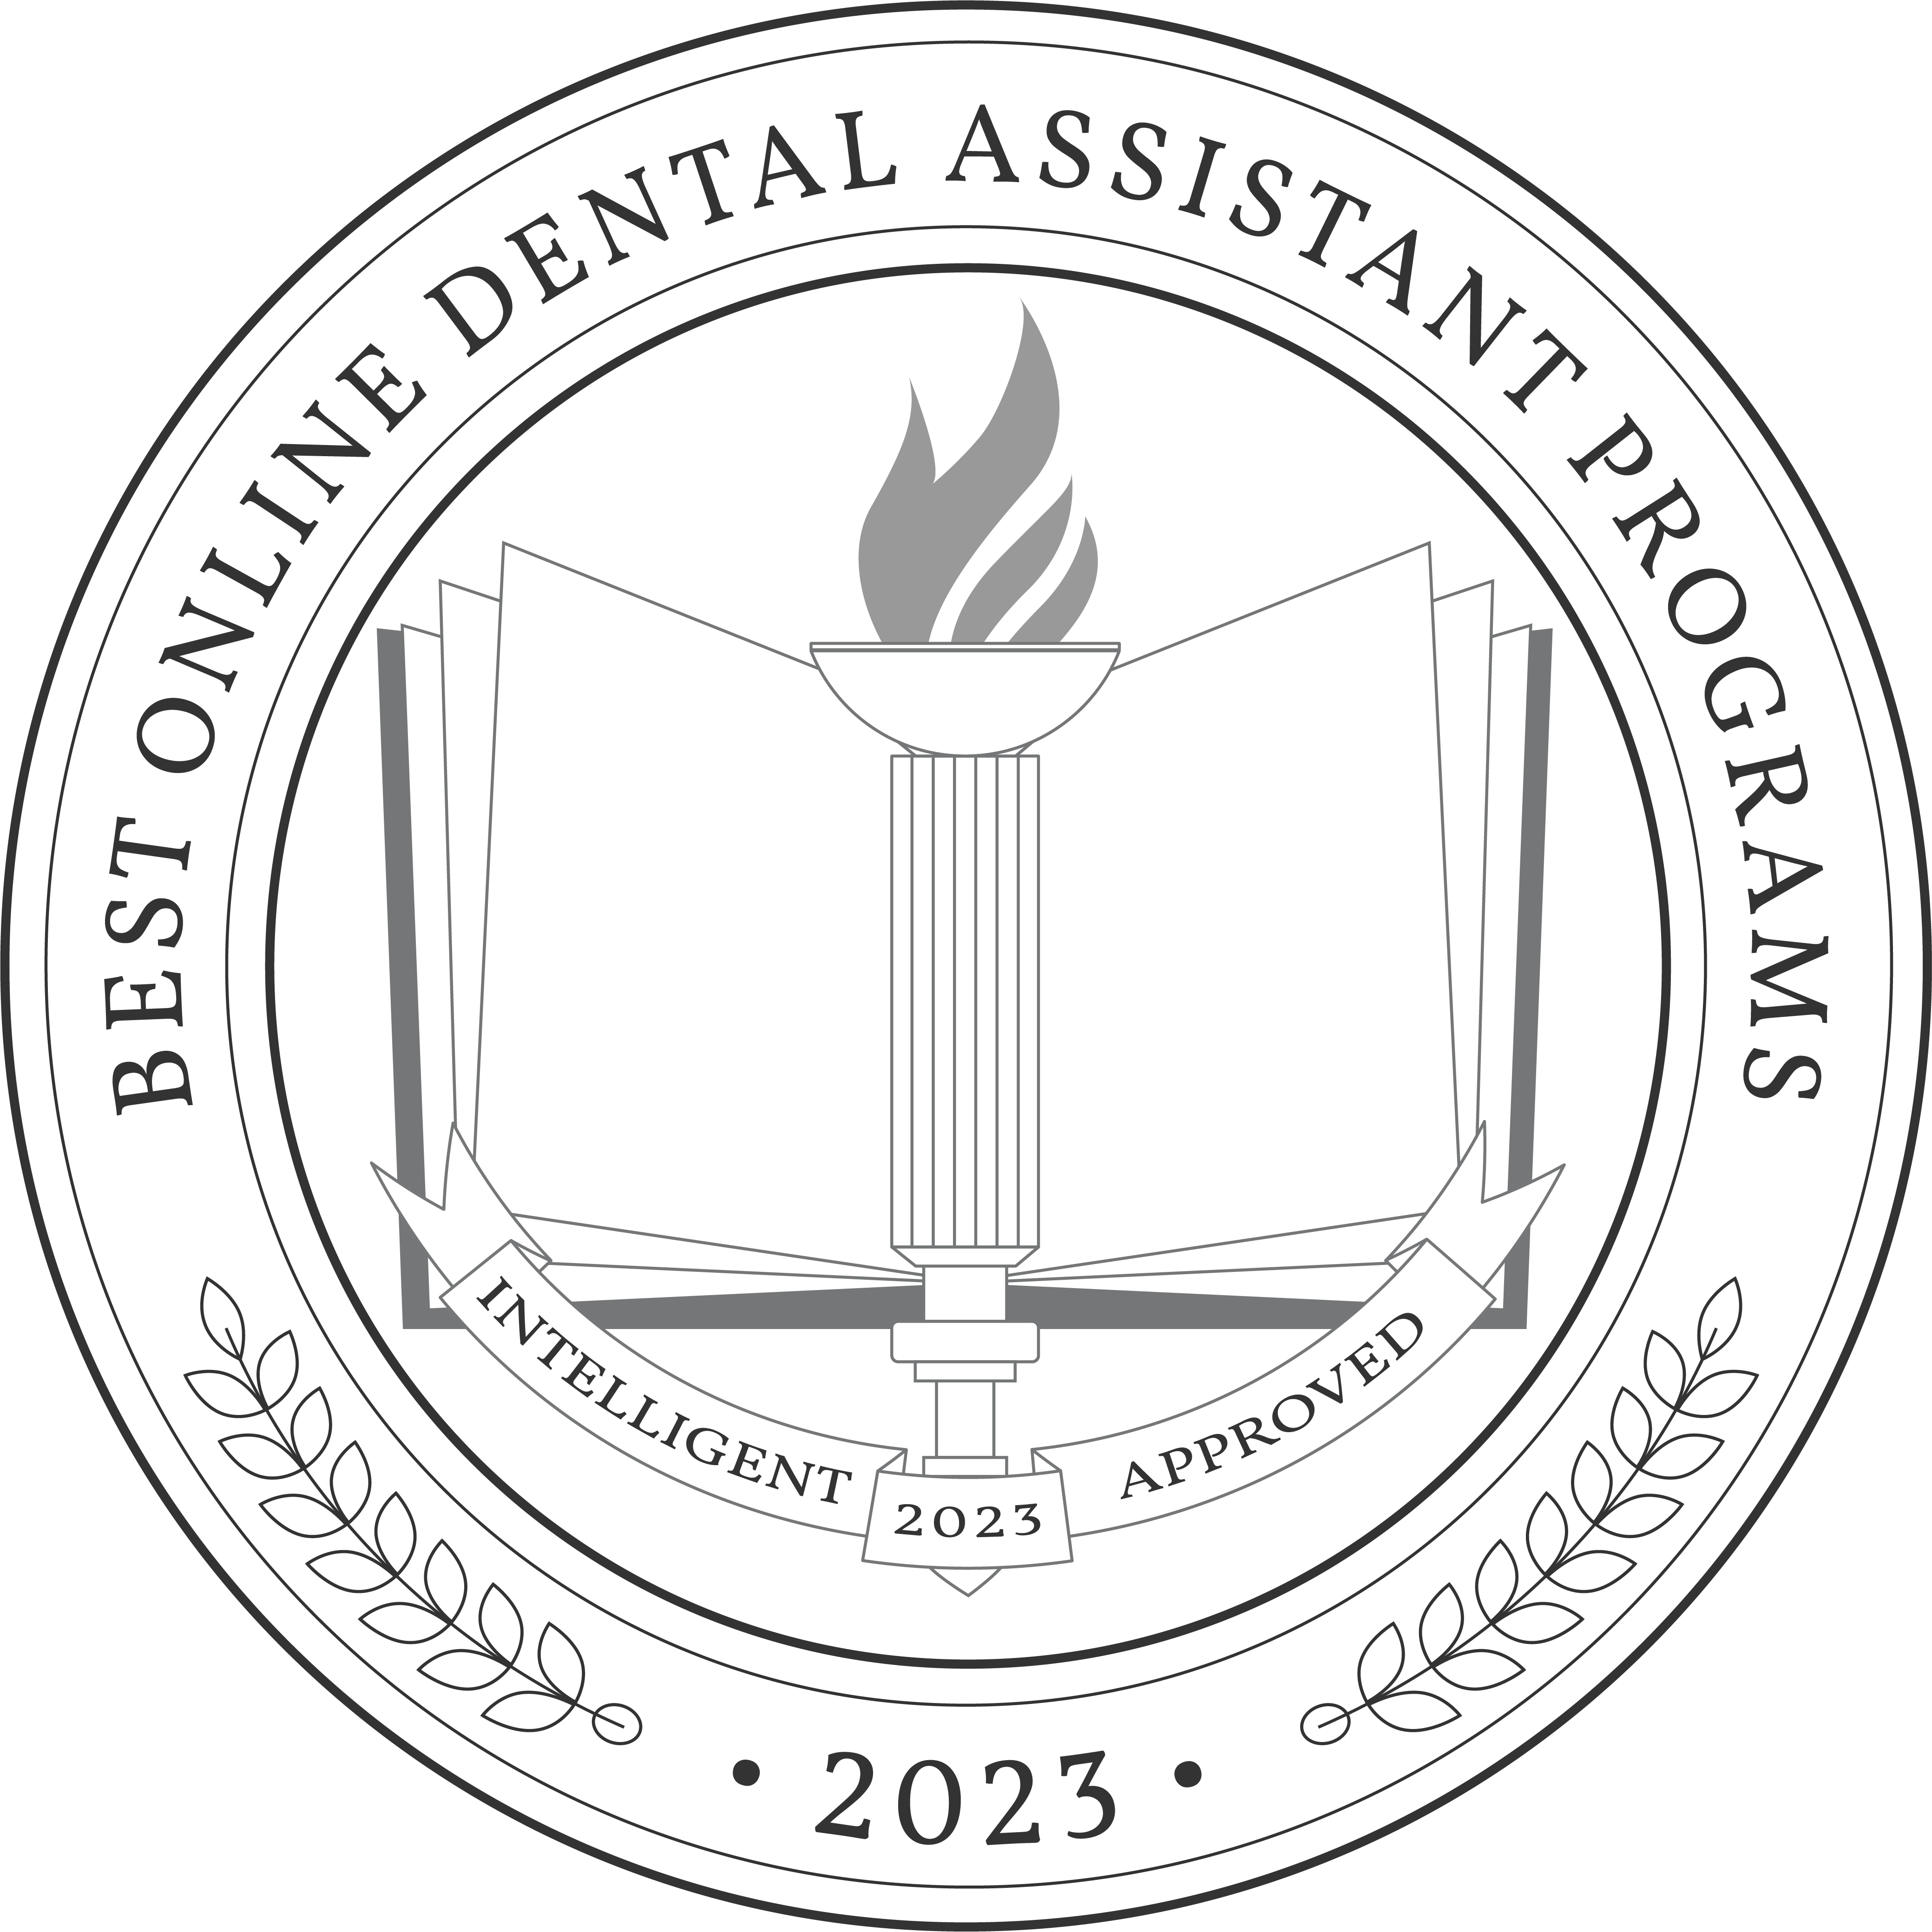 Best Online Dental Assistant Programs badge